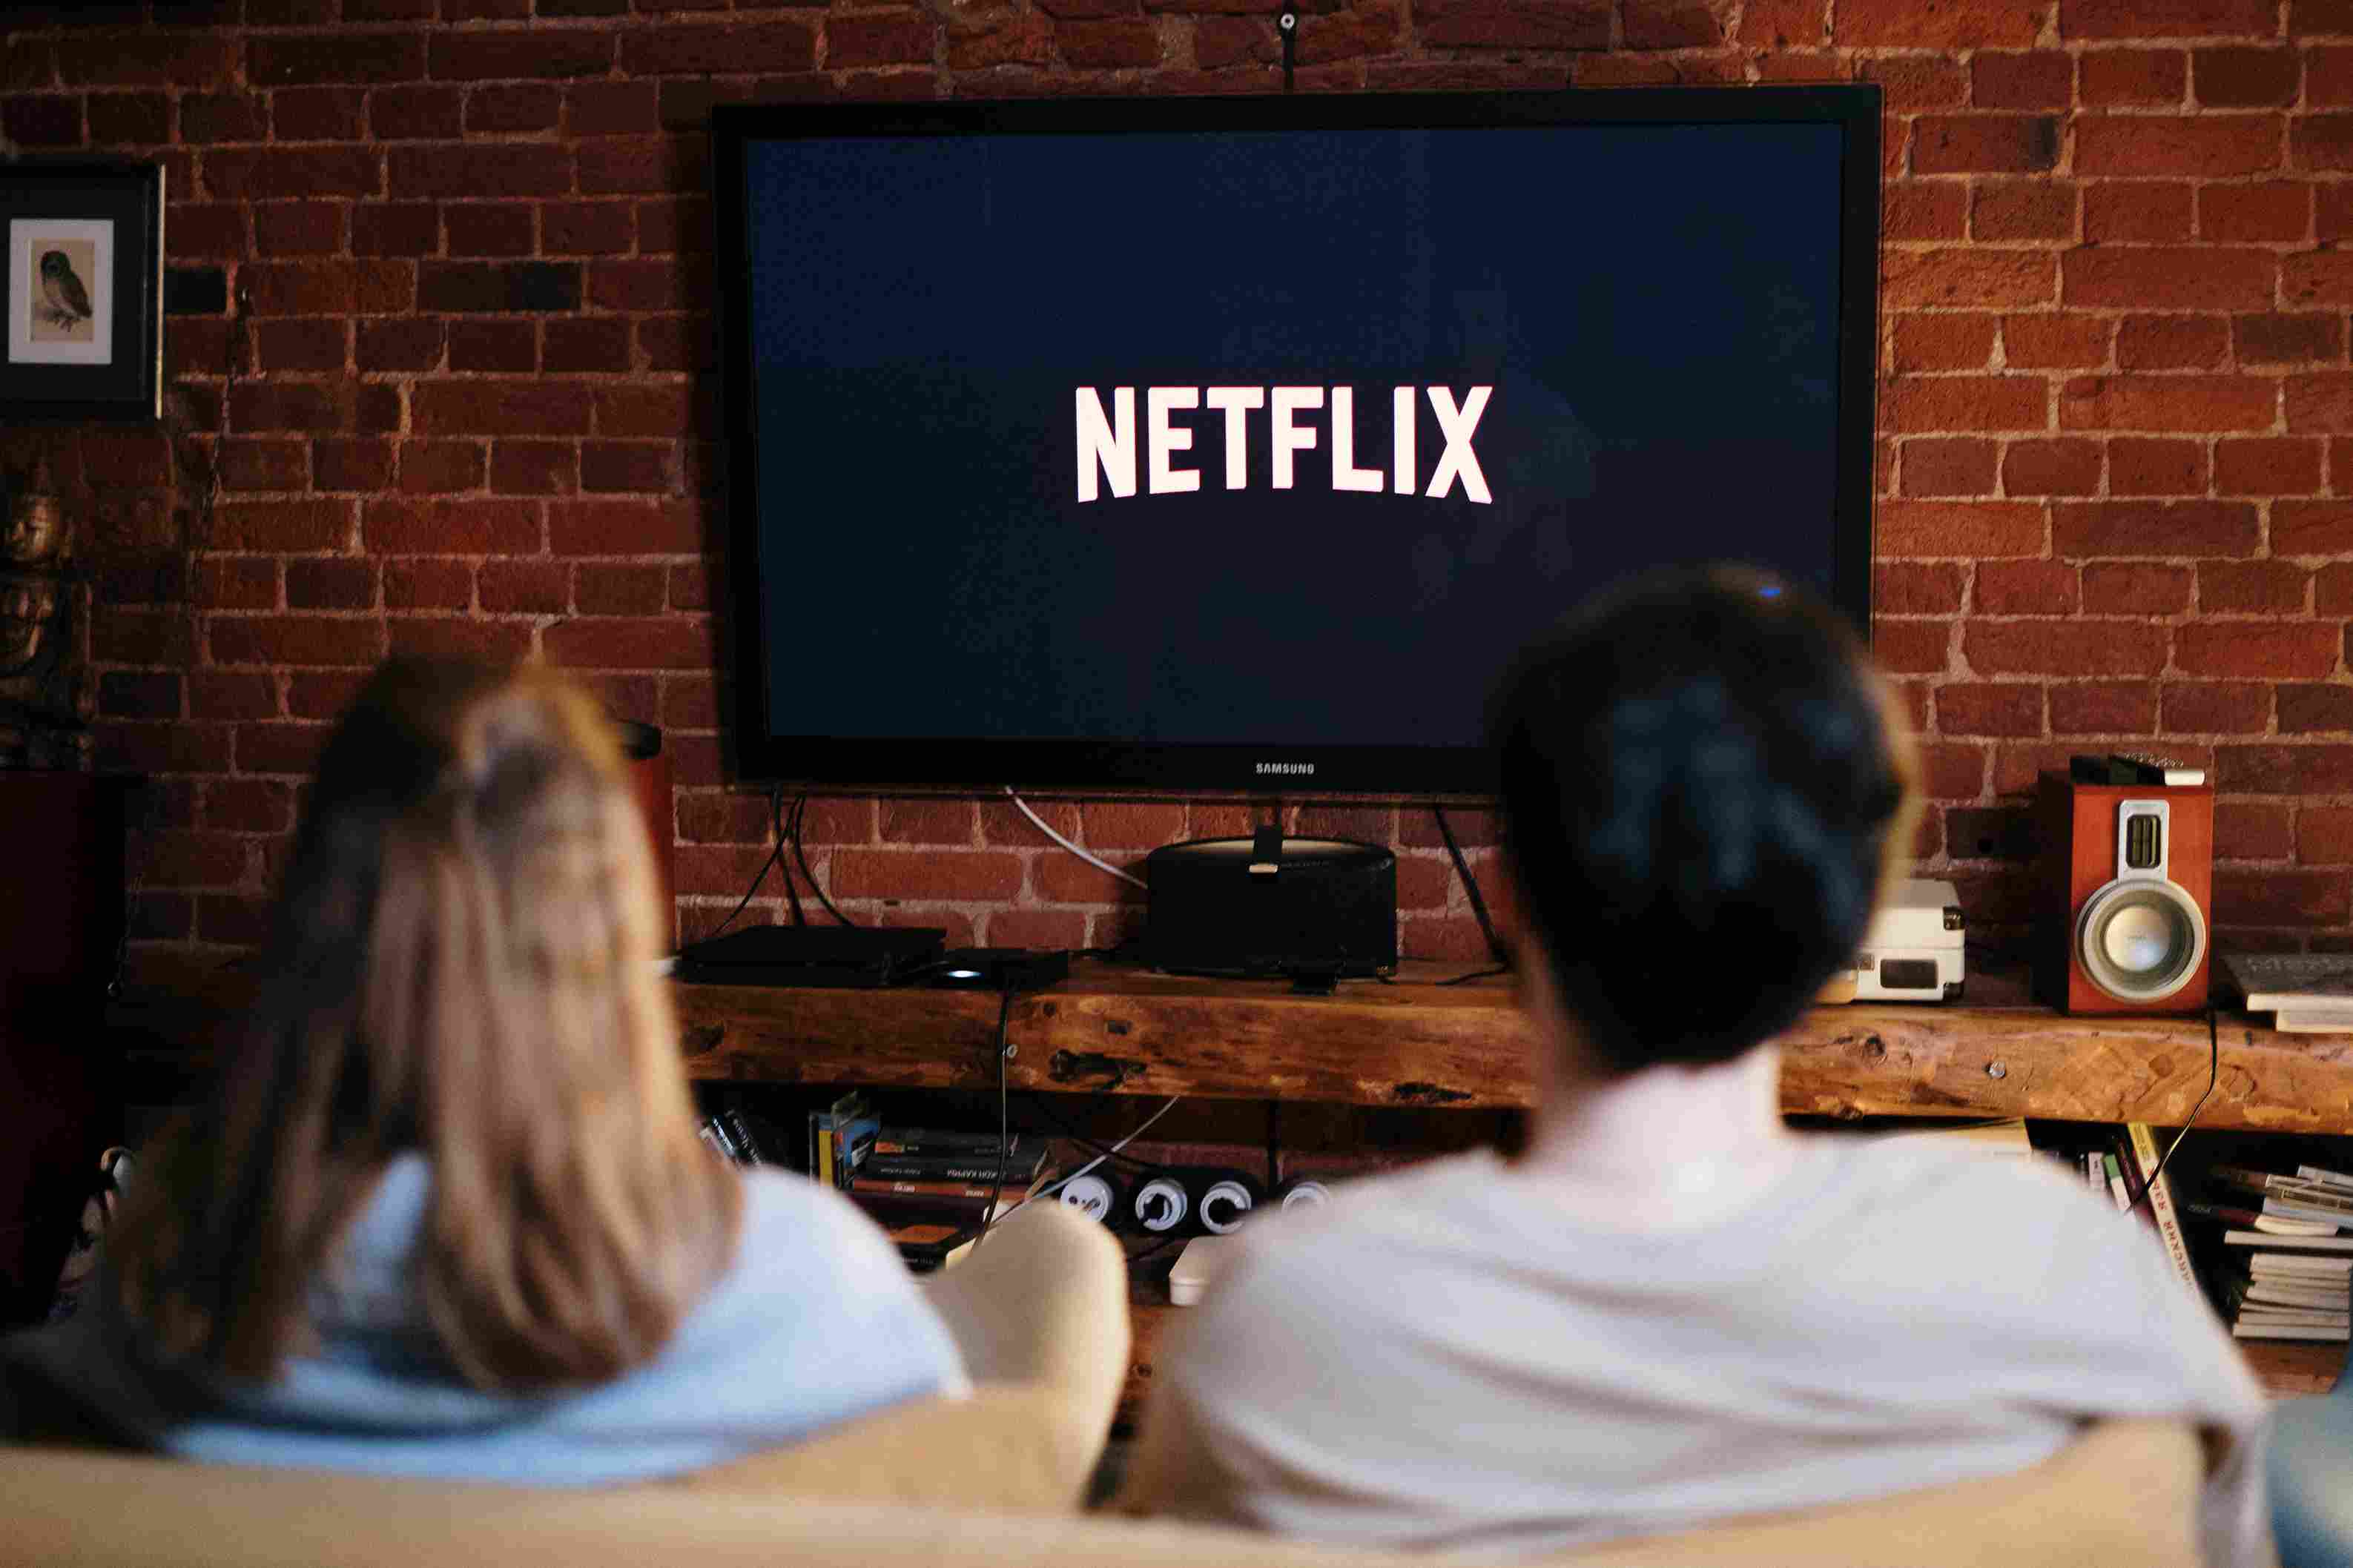 Baca 5 Rekomendasi Film Netflix Thriller Yang Wajib Ditonton